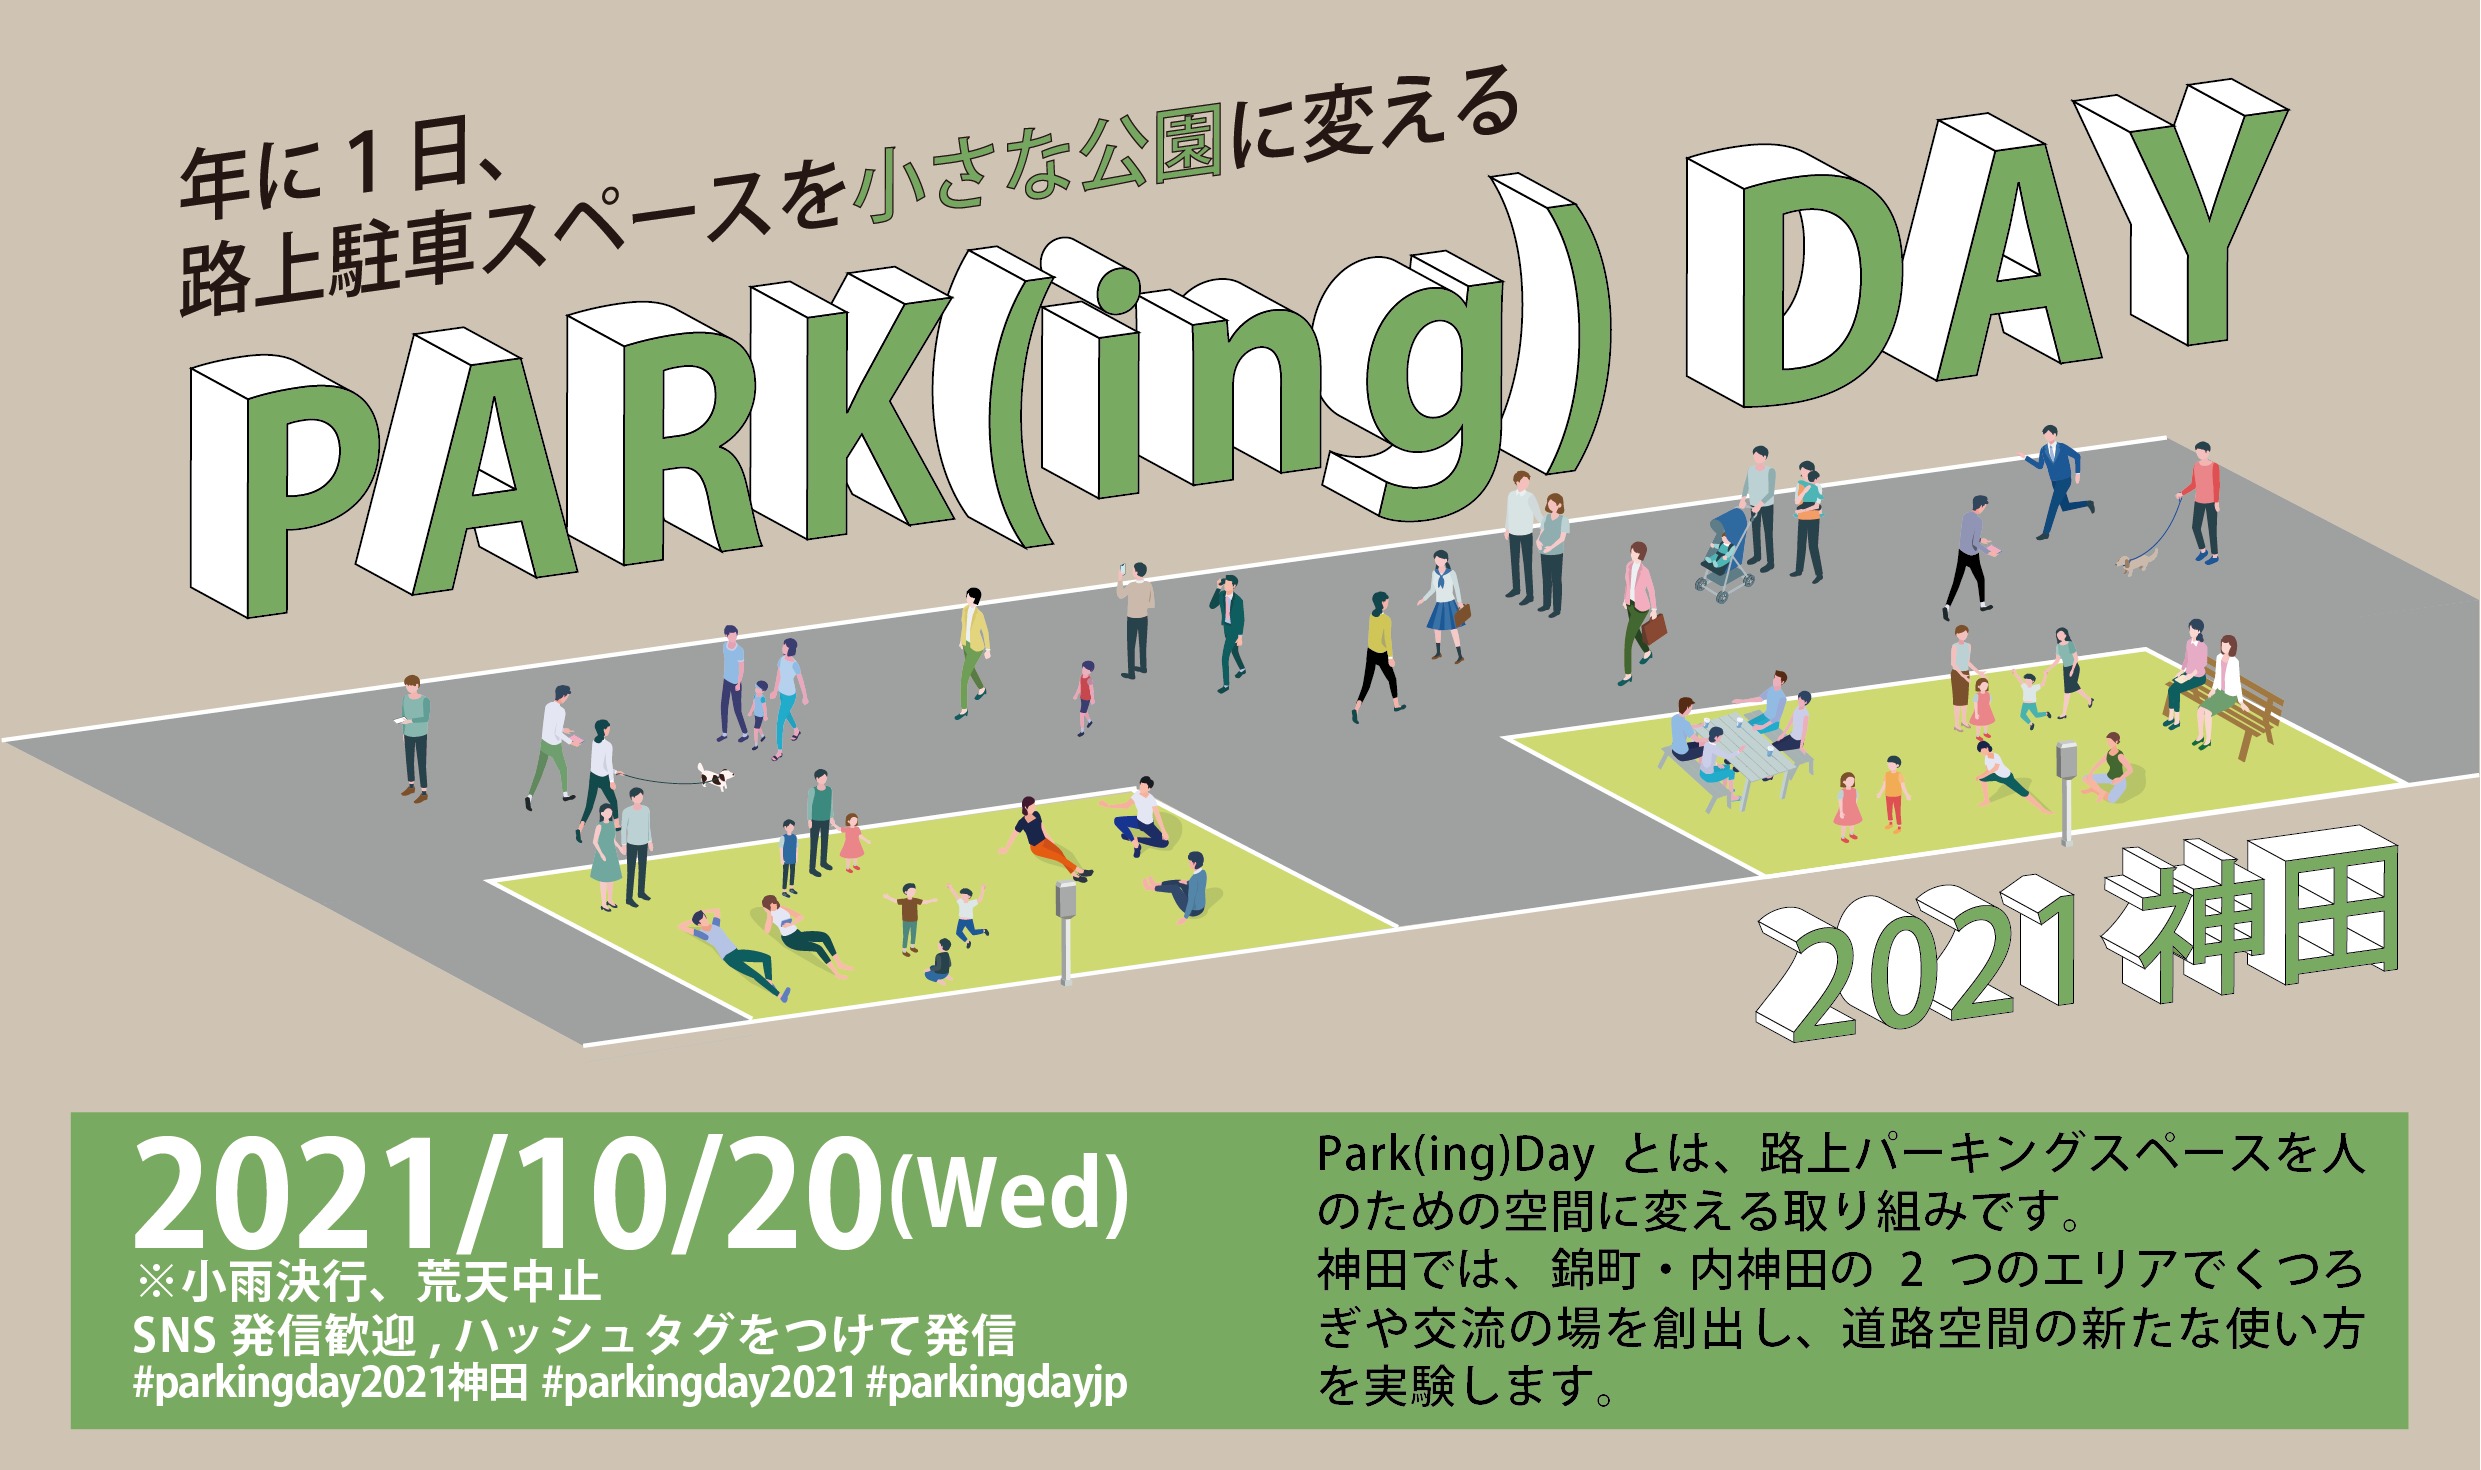 10 神田の路上駐車スペースをウォーカブルな道路空間に変える Park Ing Day21神田 開催 ソトノバ Sotonoba Place